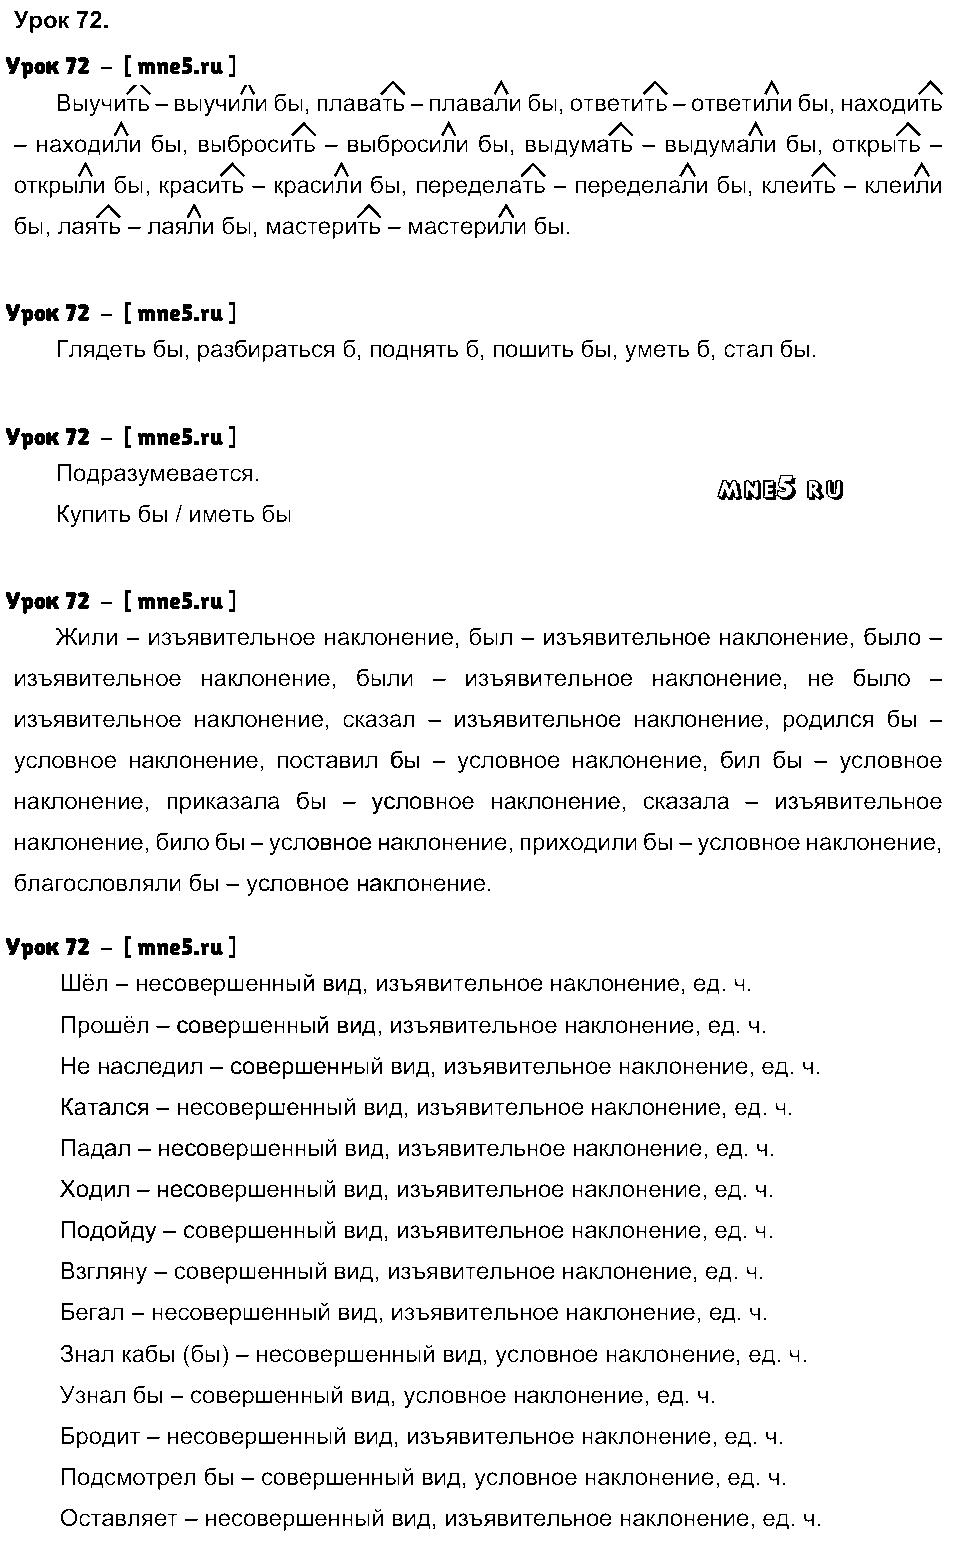 ГДЗ Русский язык 4 класс - Урок 72